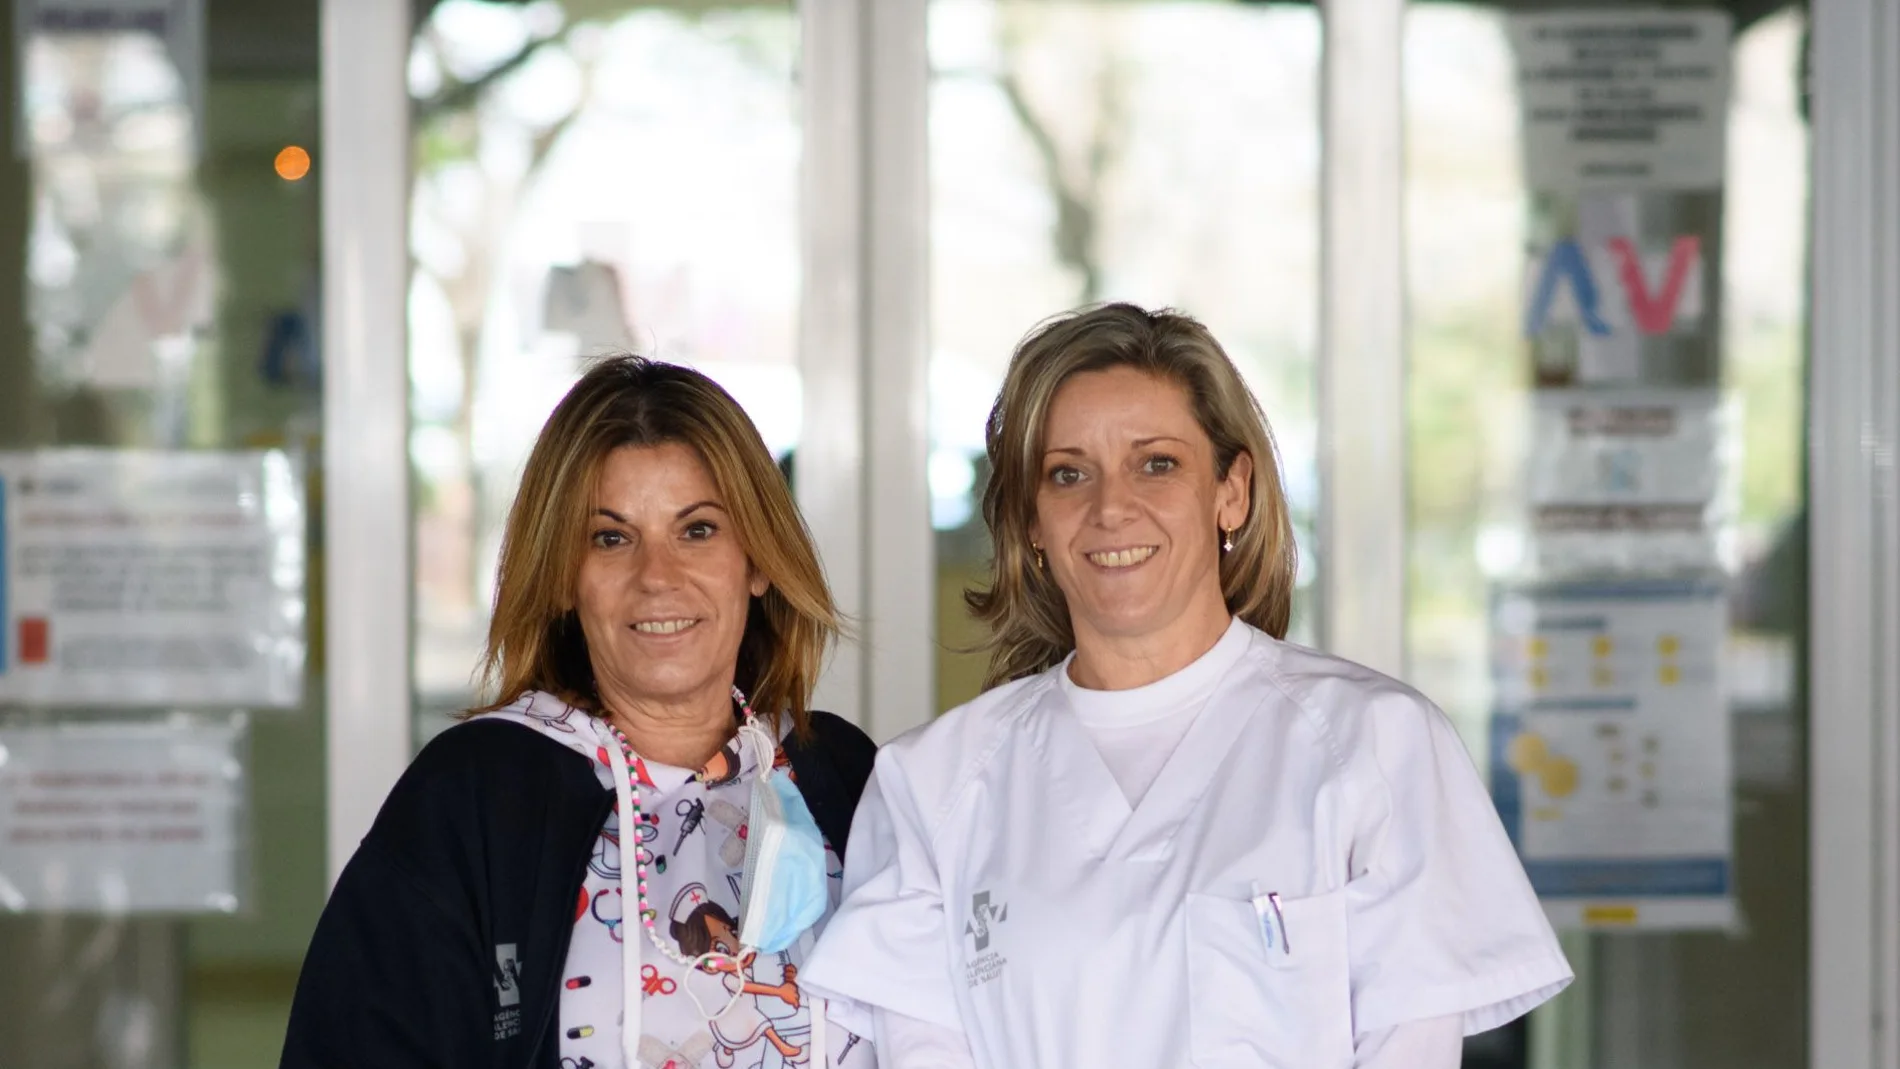 Cintia Borja y Carolina Martínez, enfermeras y expertas en lactancia materna, a las puertas del centro de salud Fuente de San Luis de Valencia